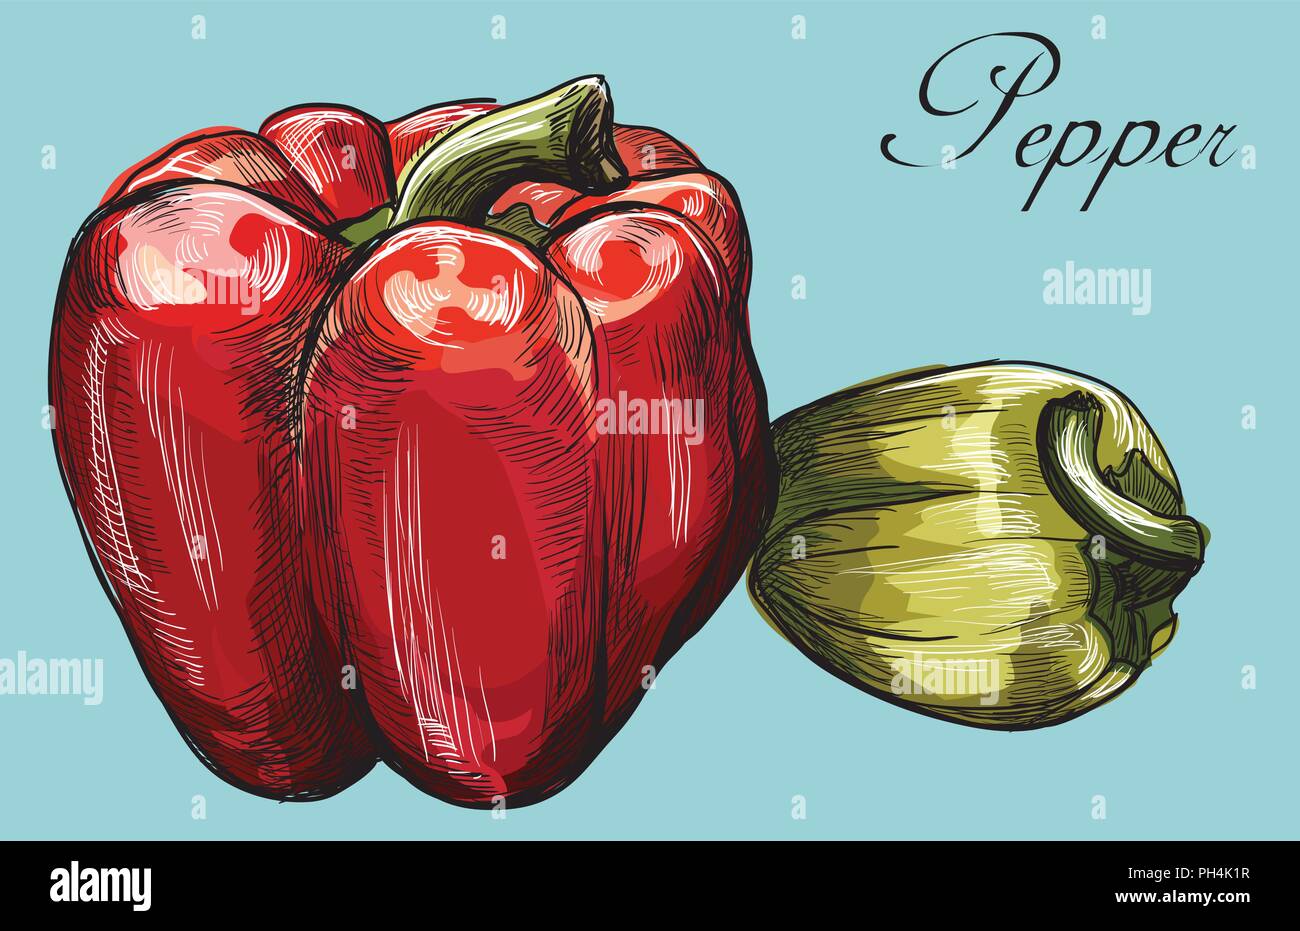 Disegnato a mano- vegetali peperoni rosso e verde. Vettore illustrazione colorata isolato su sfondo blu. Illustrazione Vettoriale